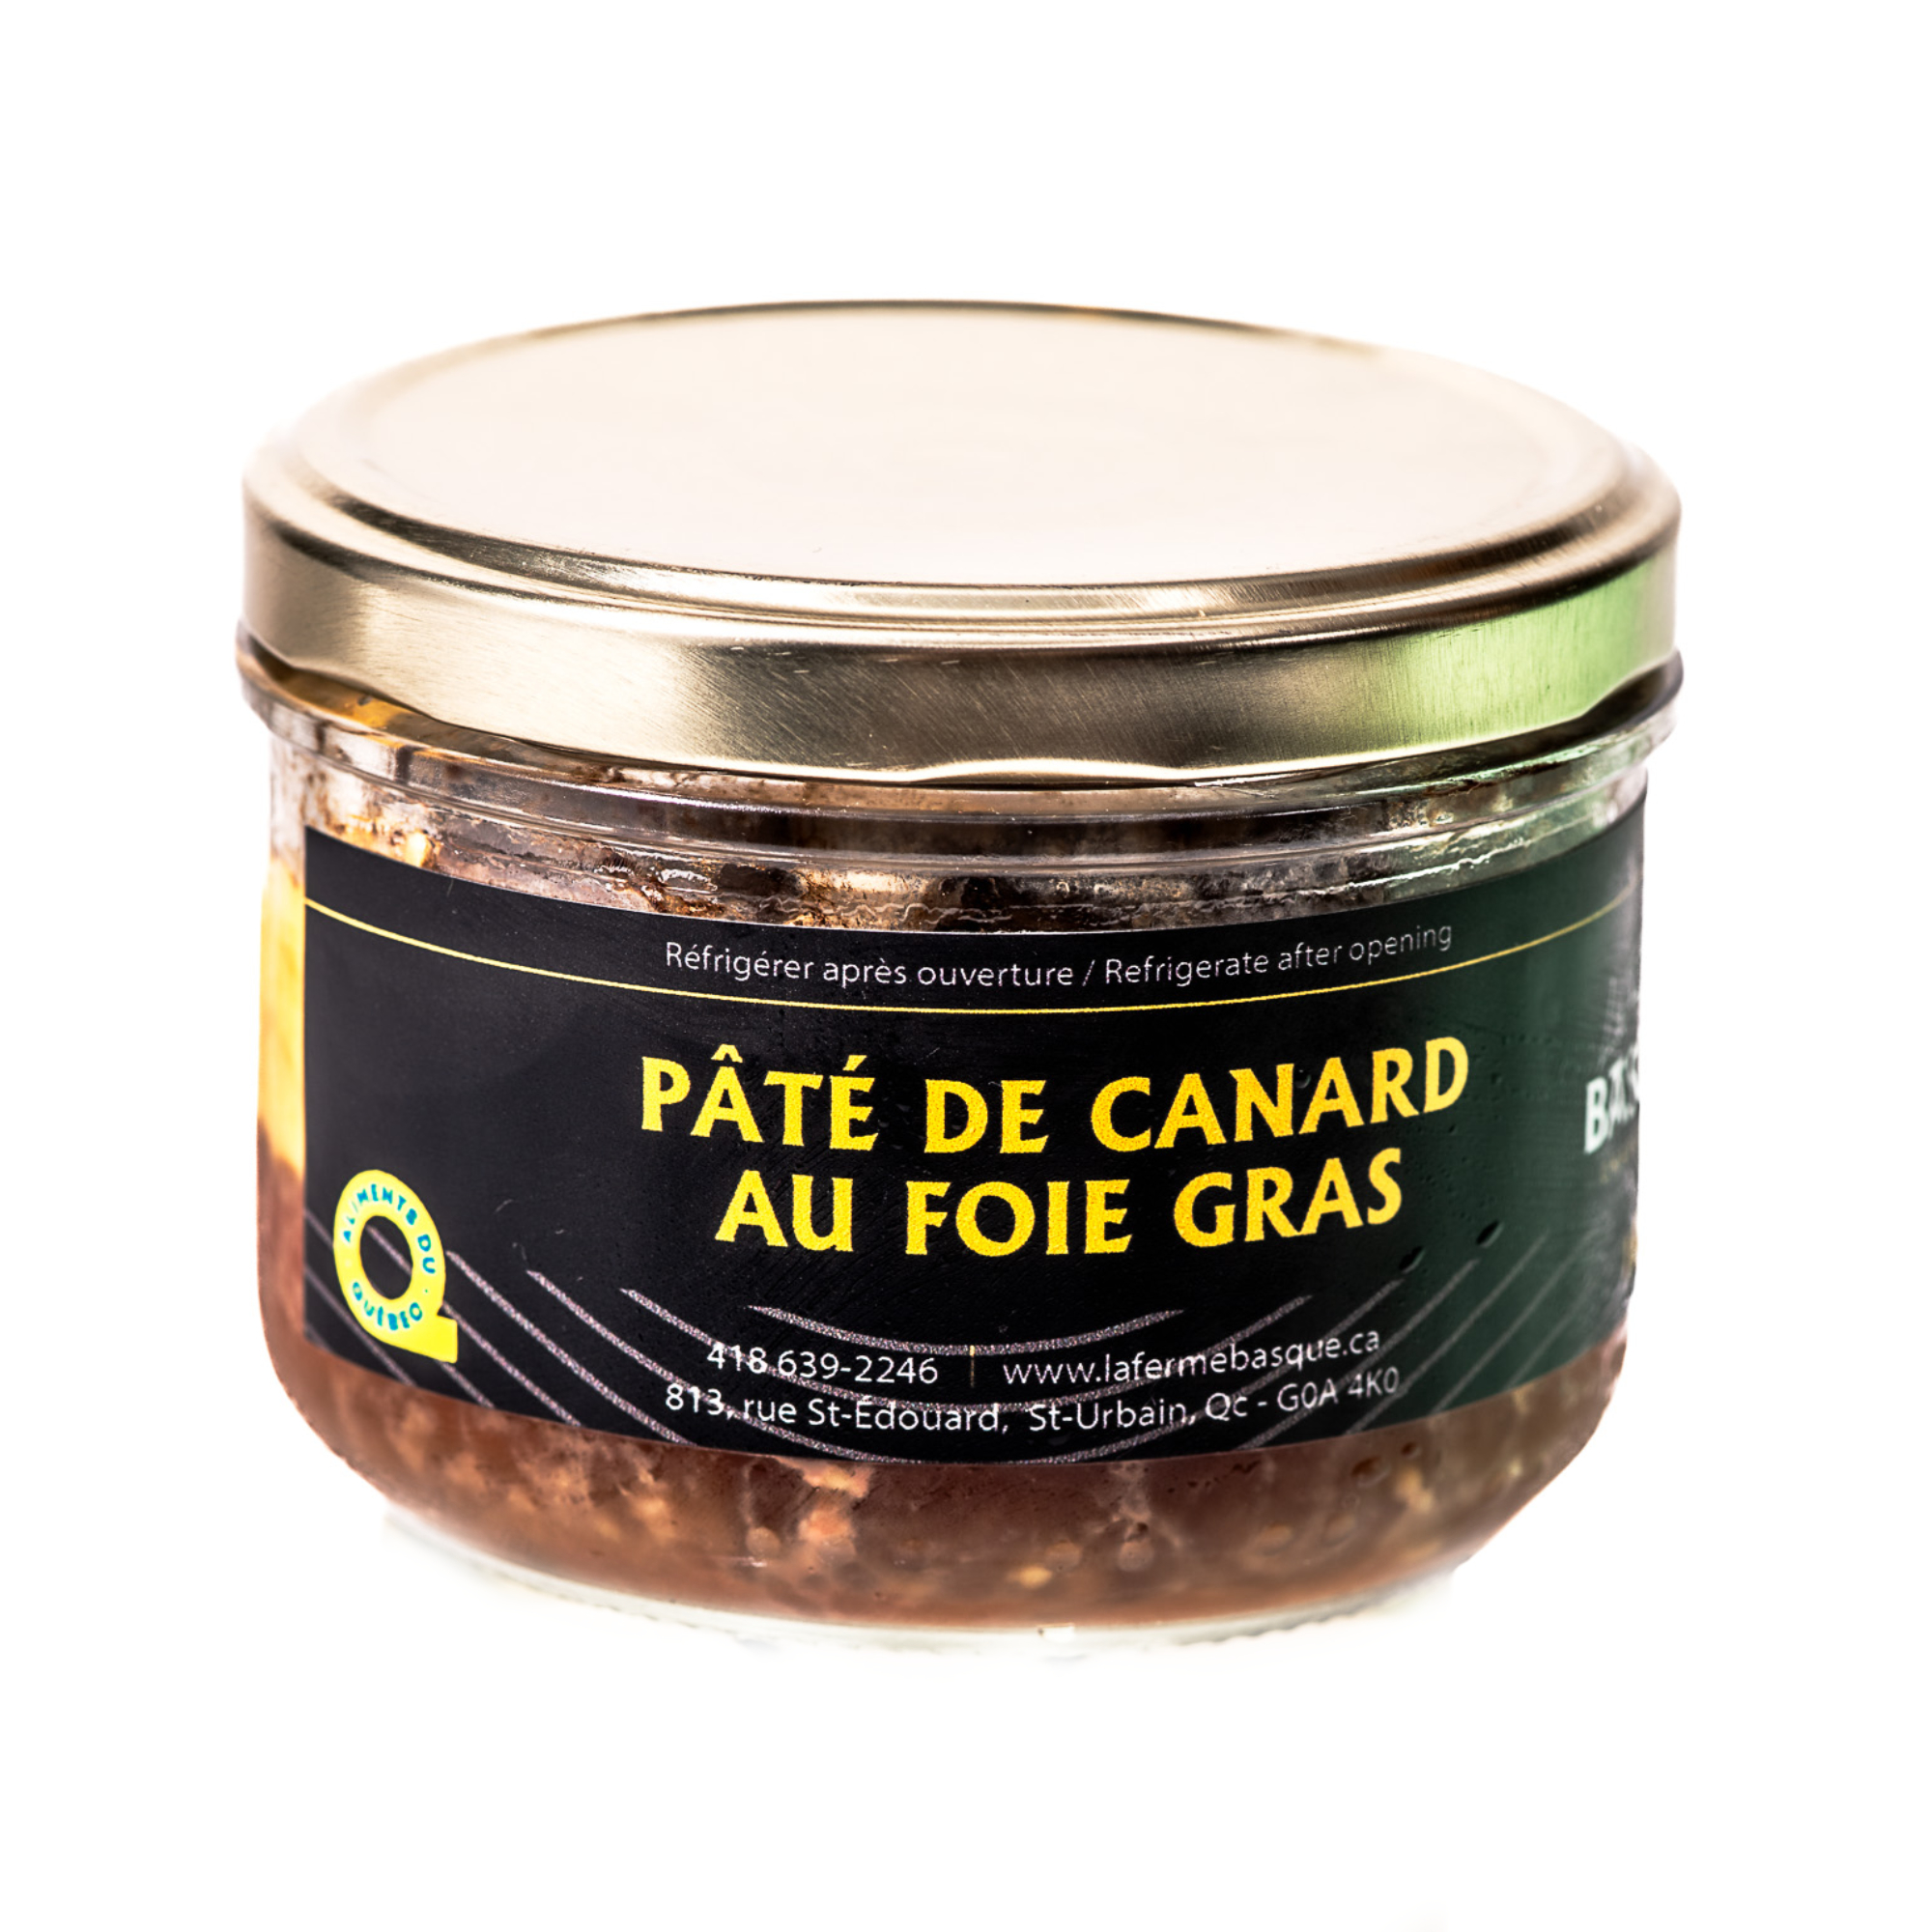 Pâté de canard au foie gras au format de 180g